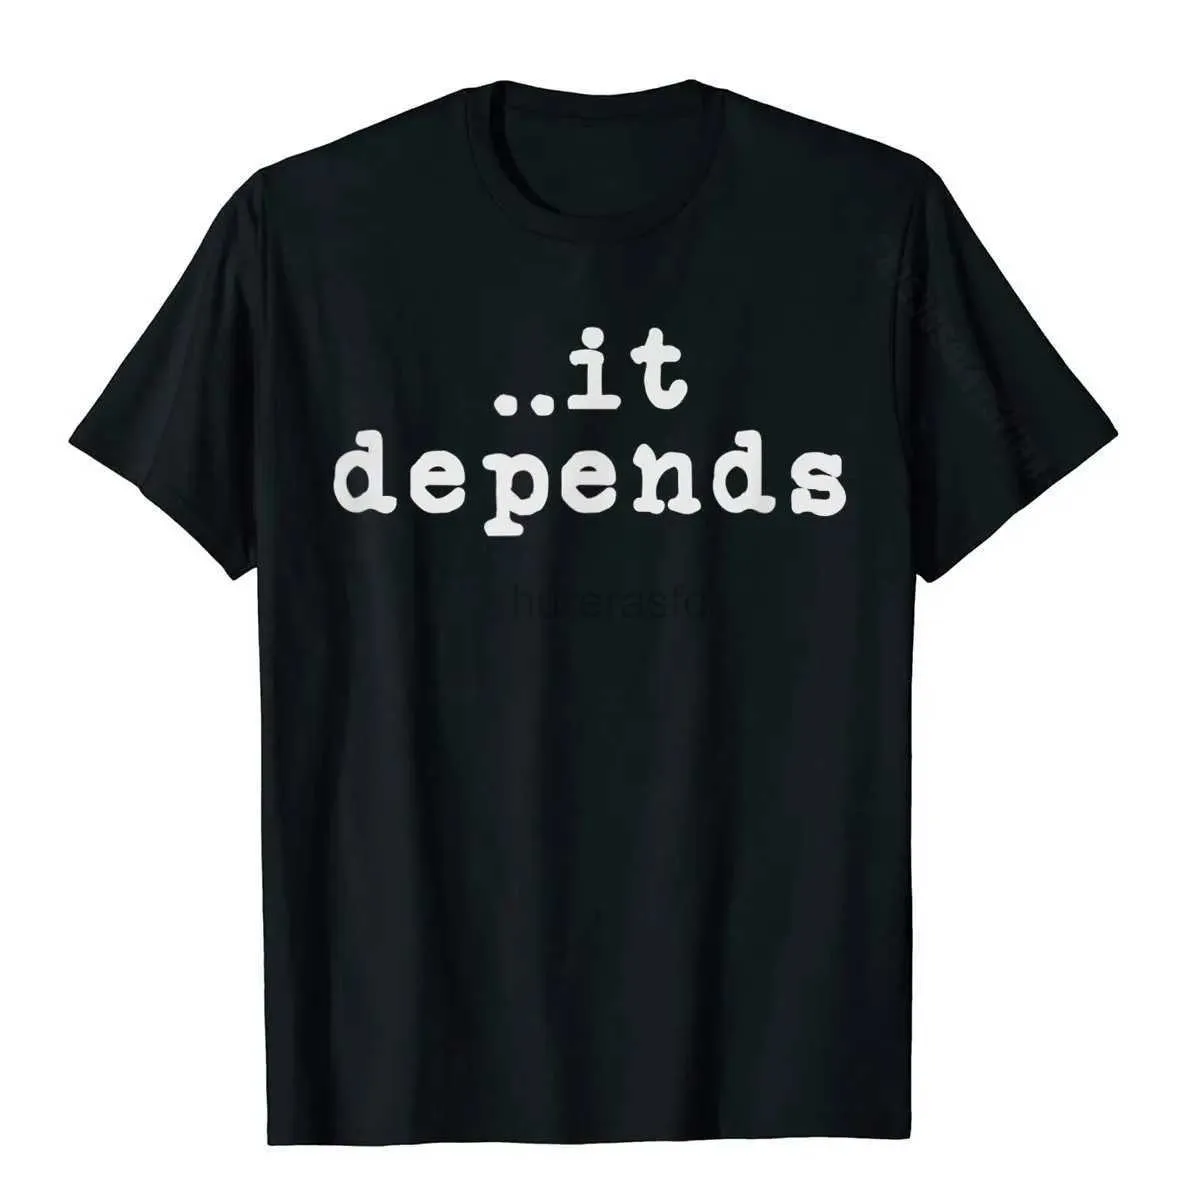 T-shirts voor heren grappige advocatengeschenken t-shirts voor mannen vrouwen het hangt van advocaat t-shirt katoen tops voor mannen gekke t-shirt normaal hoge kwaliteit 2445